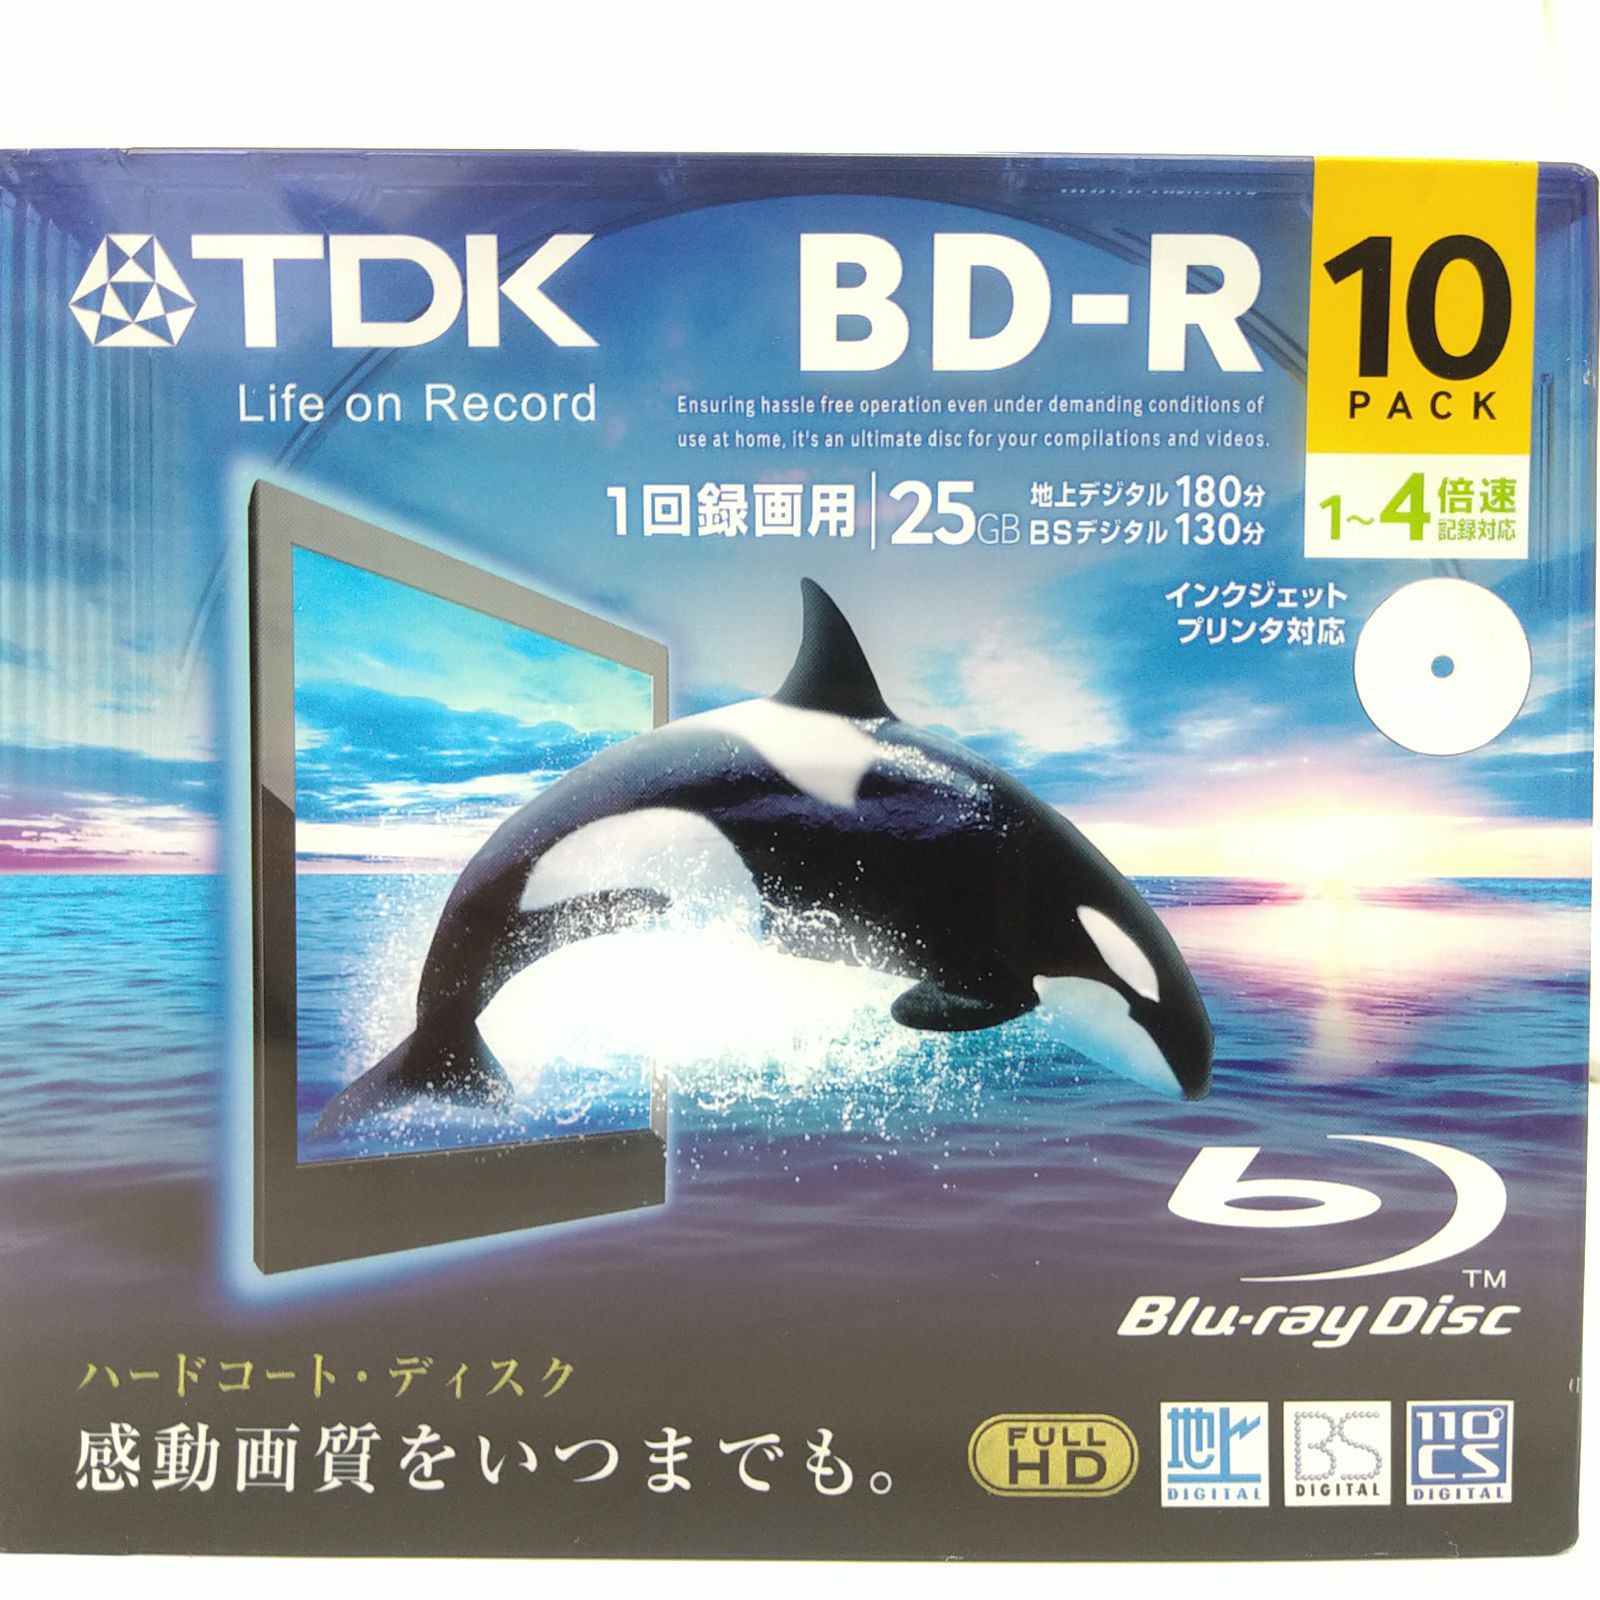 TDK 録画用ブルーレイディスク ハードコート仕様 BD-R 25GB 1-4倍速